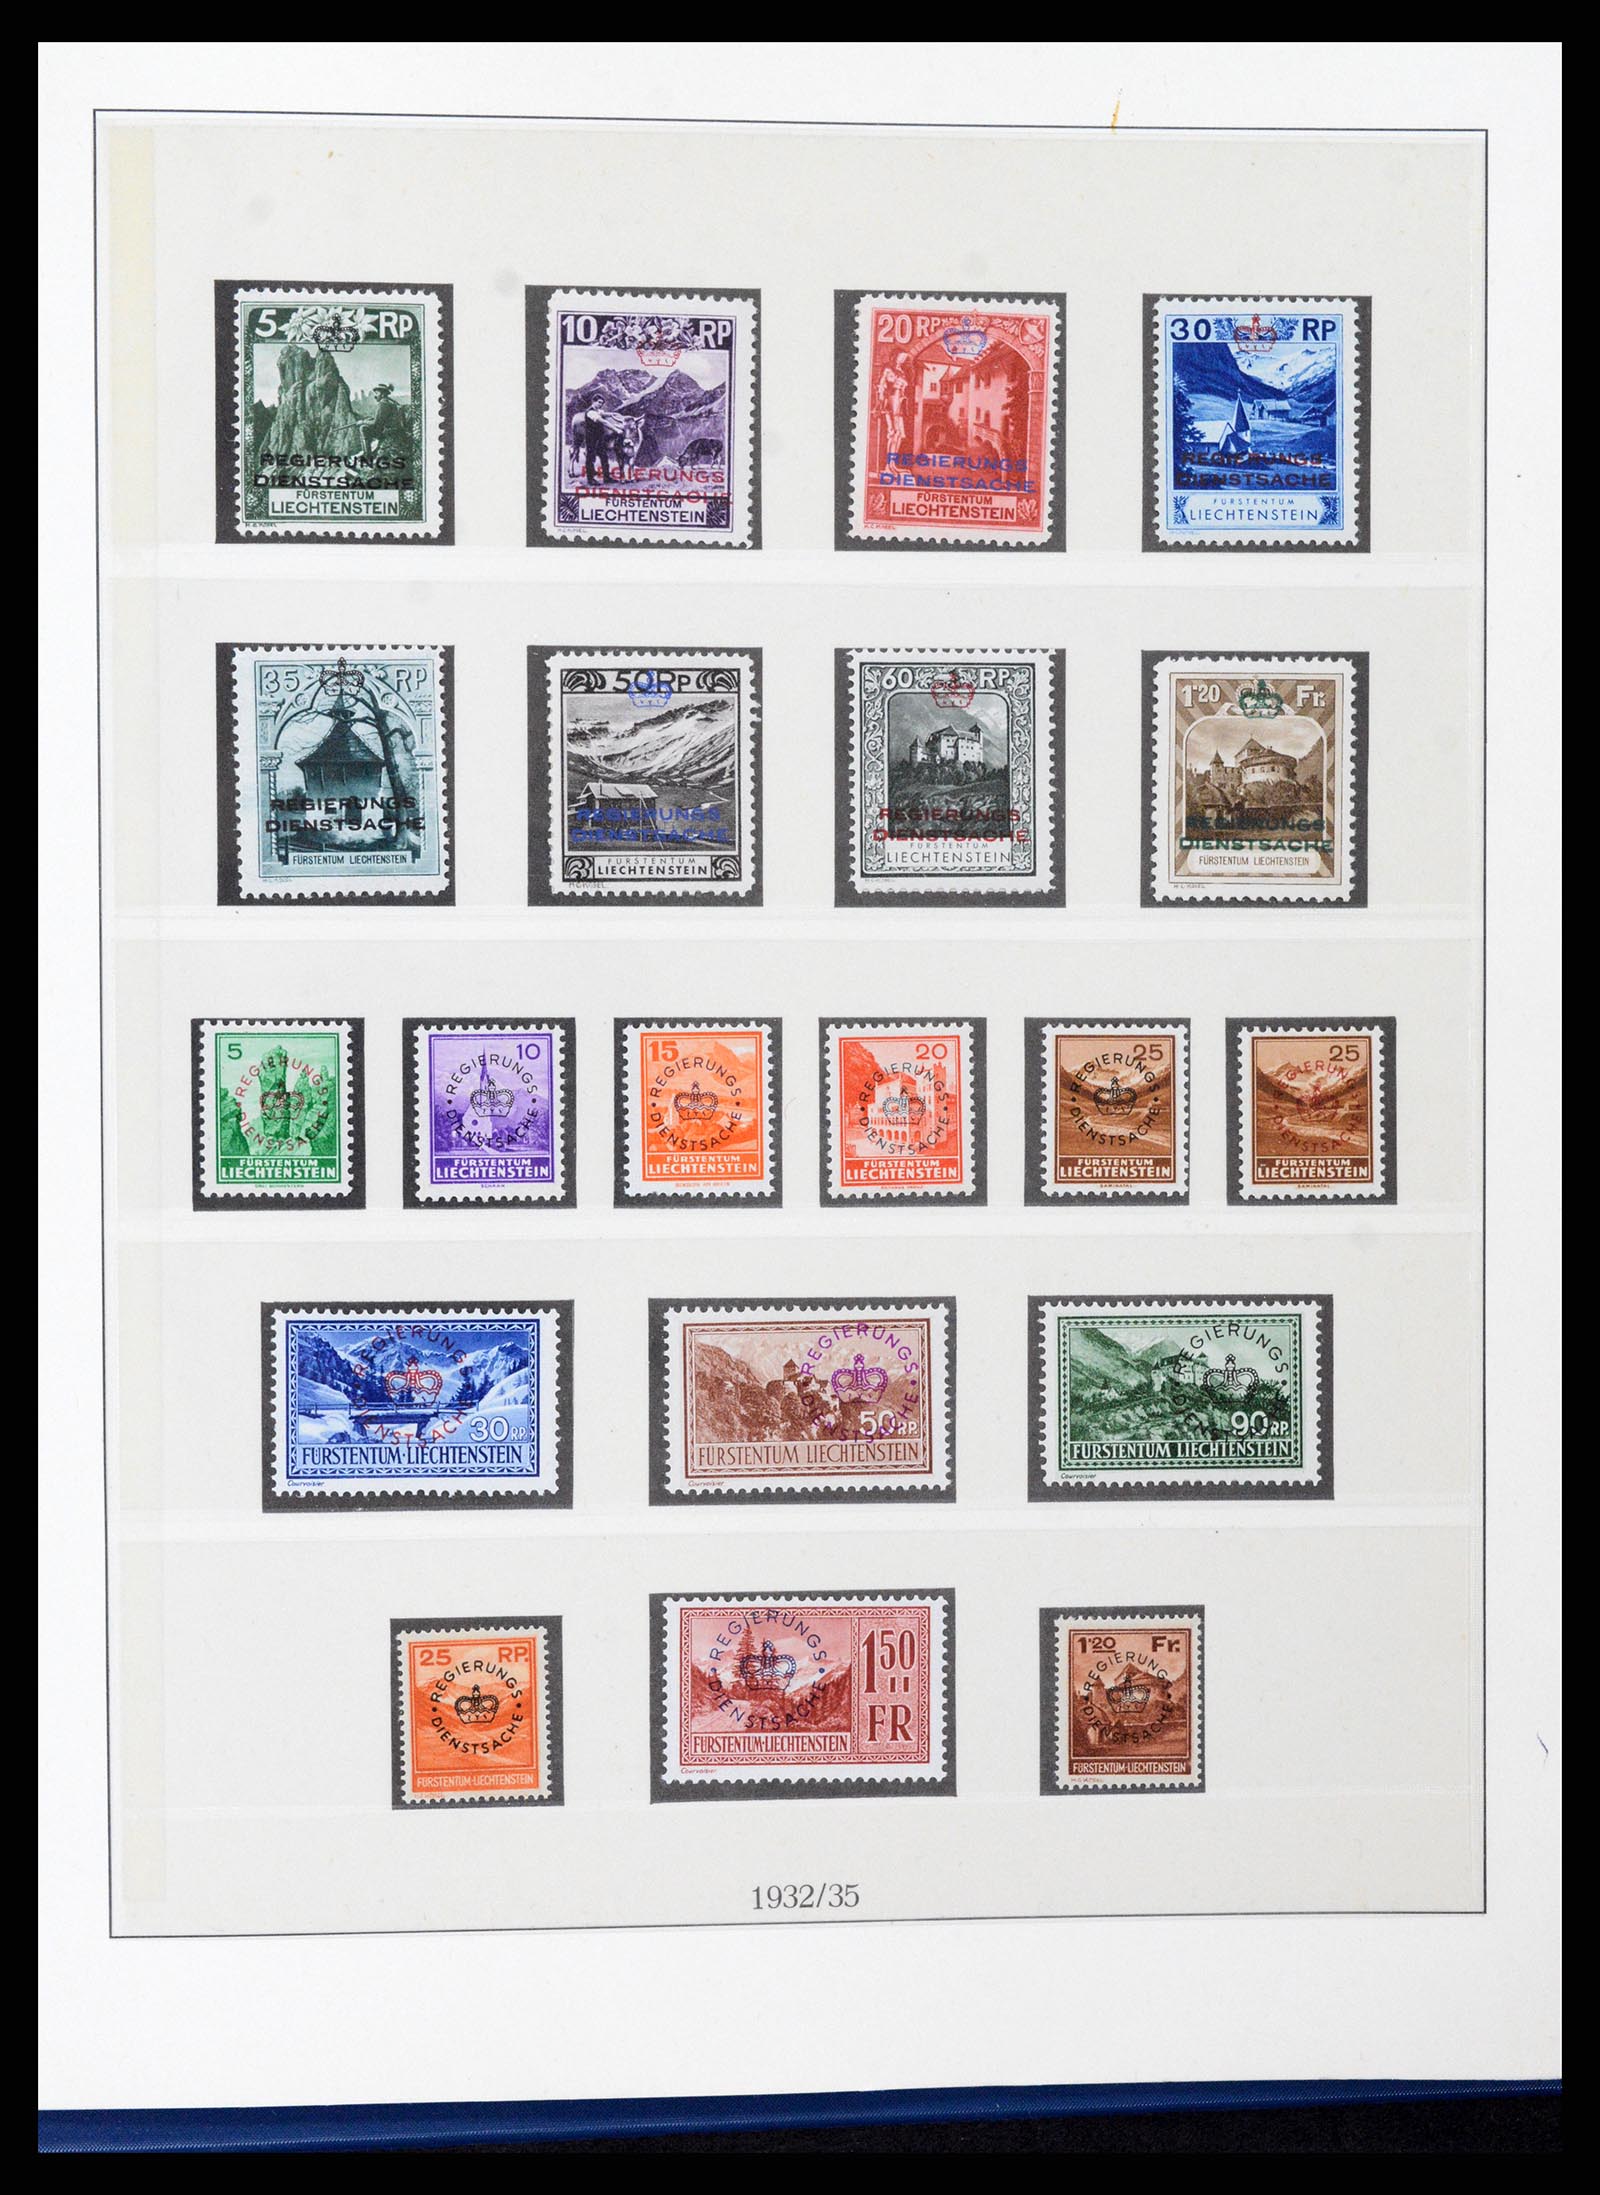 37295 031 - Stamp collection 37295 Liechtenstein 1912-2009.